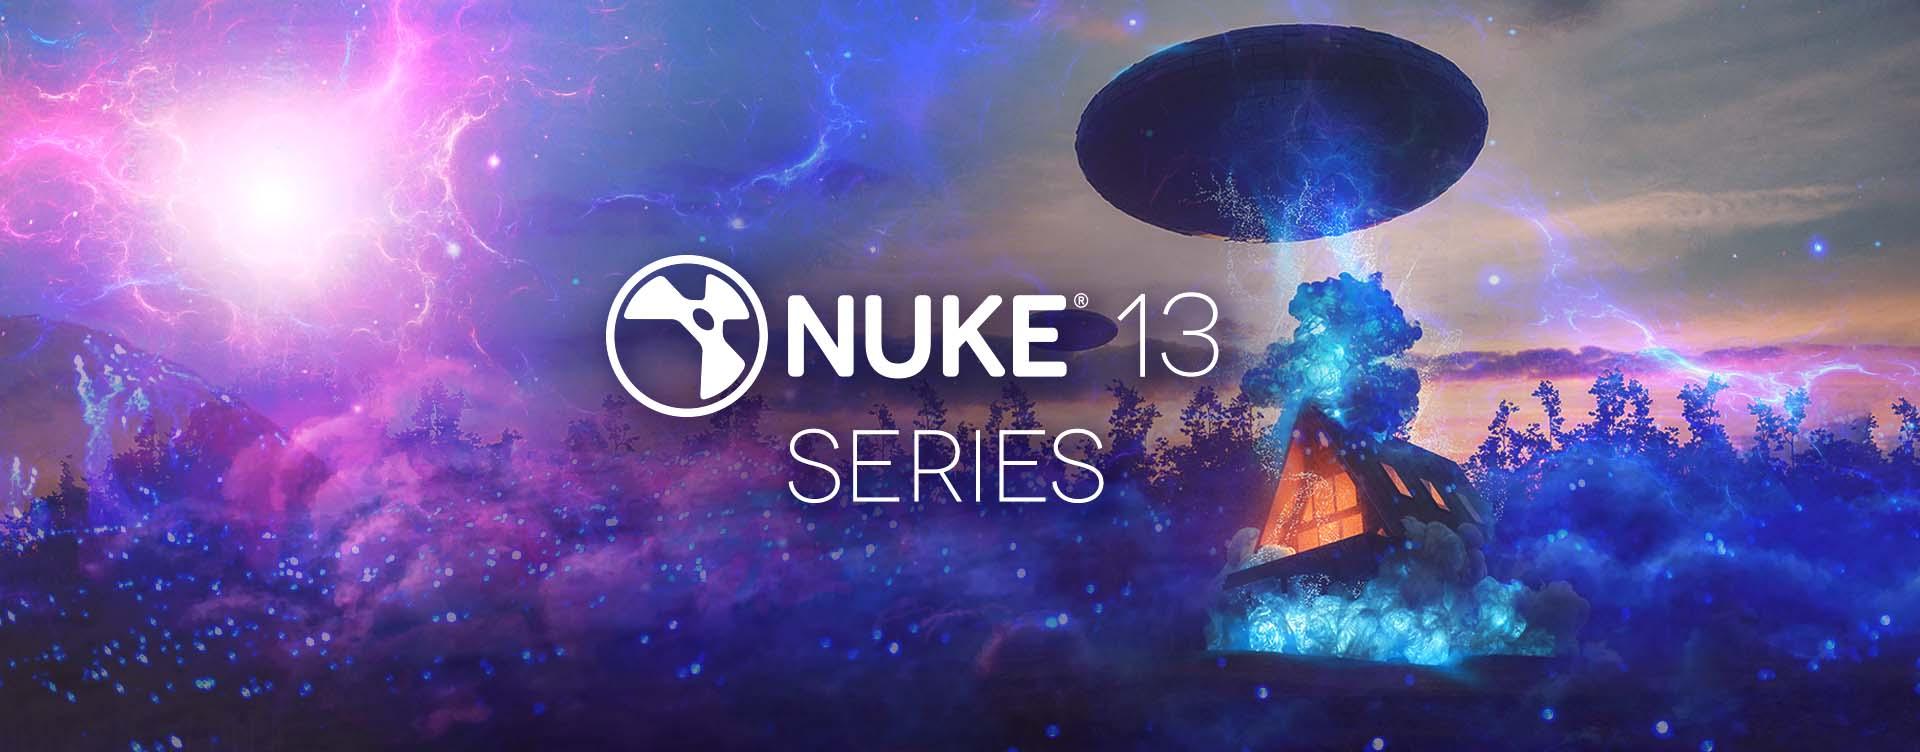 Nuke 13 Series Header